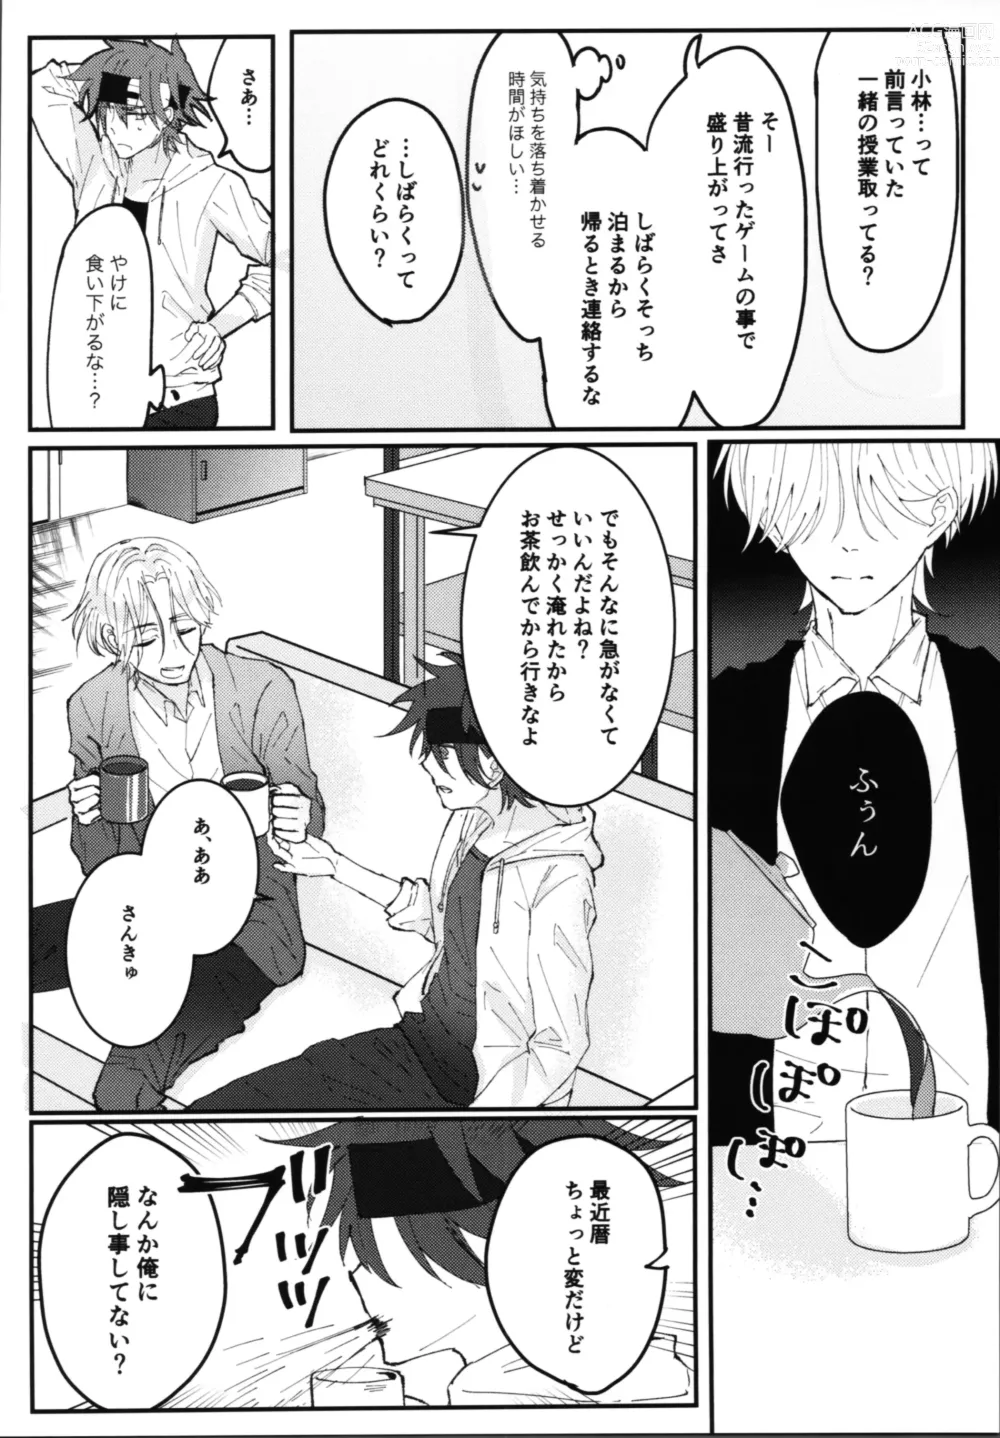 Page 11 of doujinshi Kimi no negao ni koishiteru